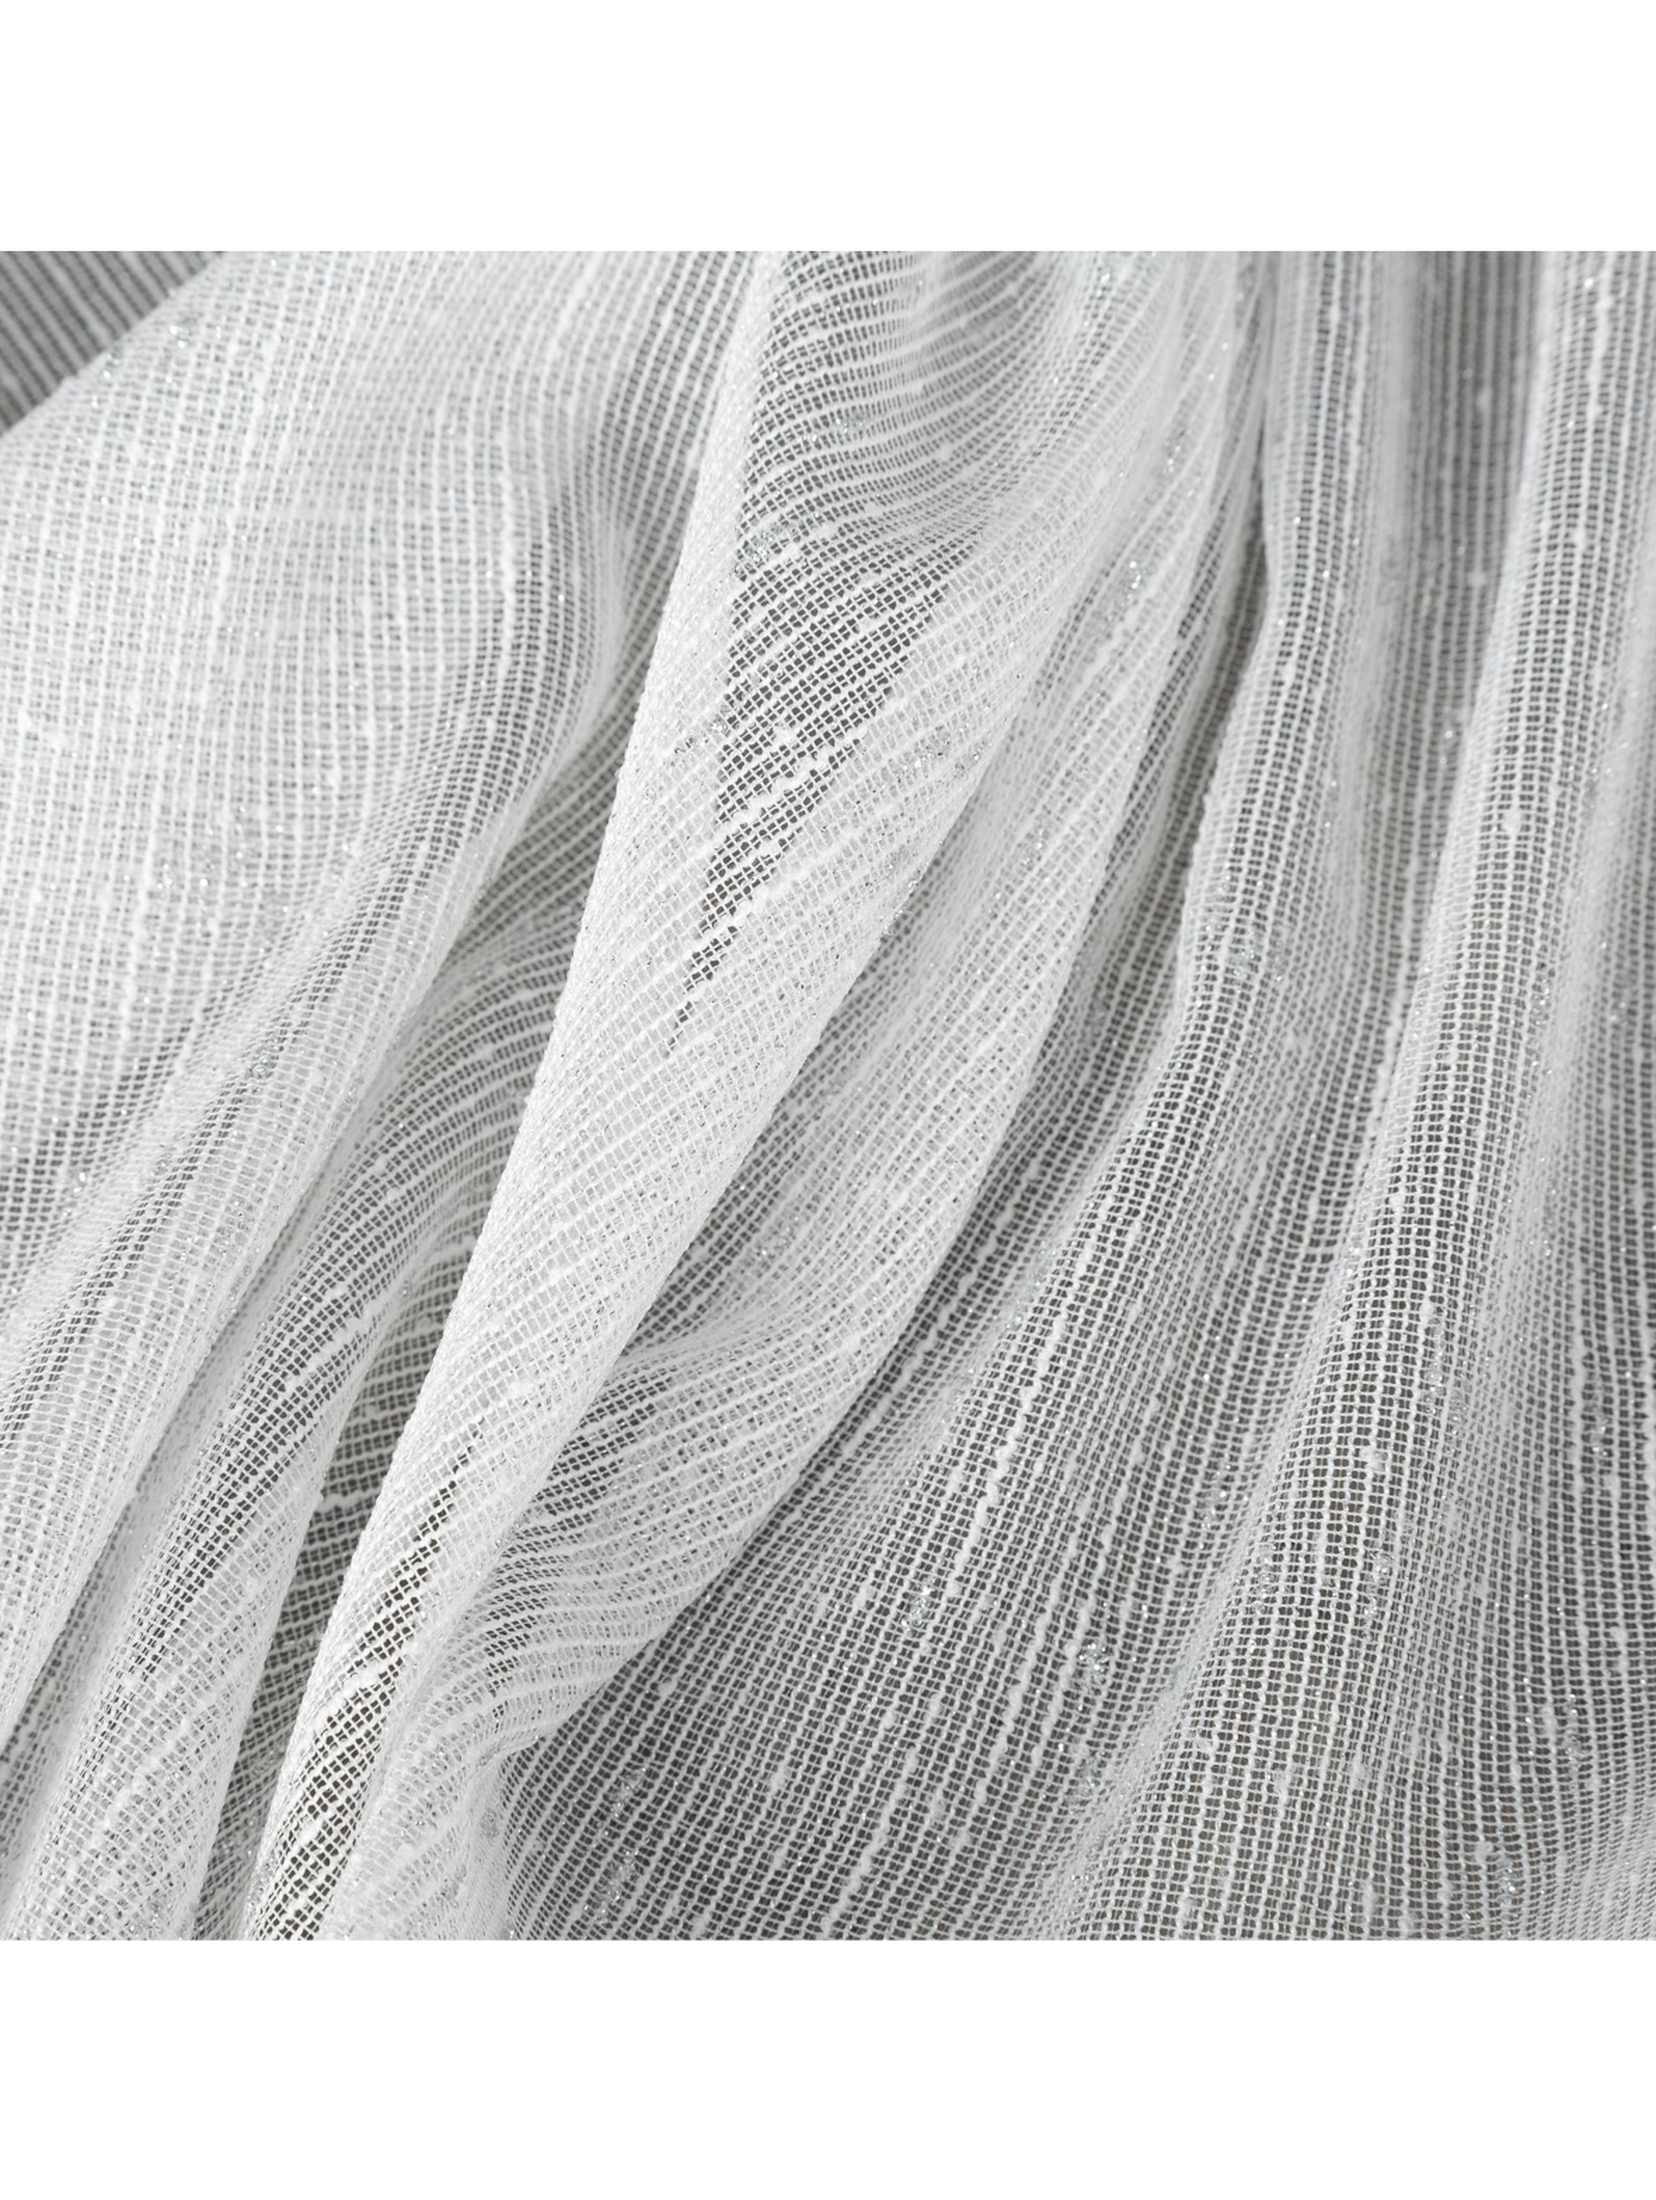 Biała firana 140x250 cm zdobiona srebrną nicią